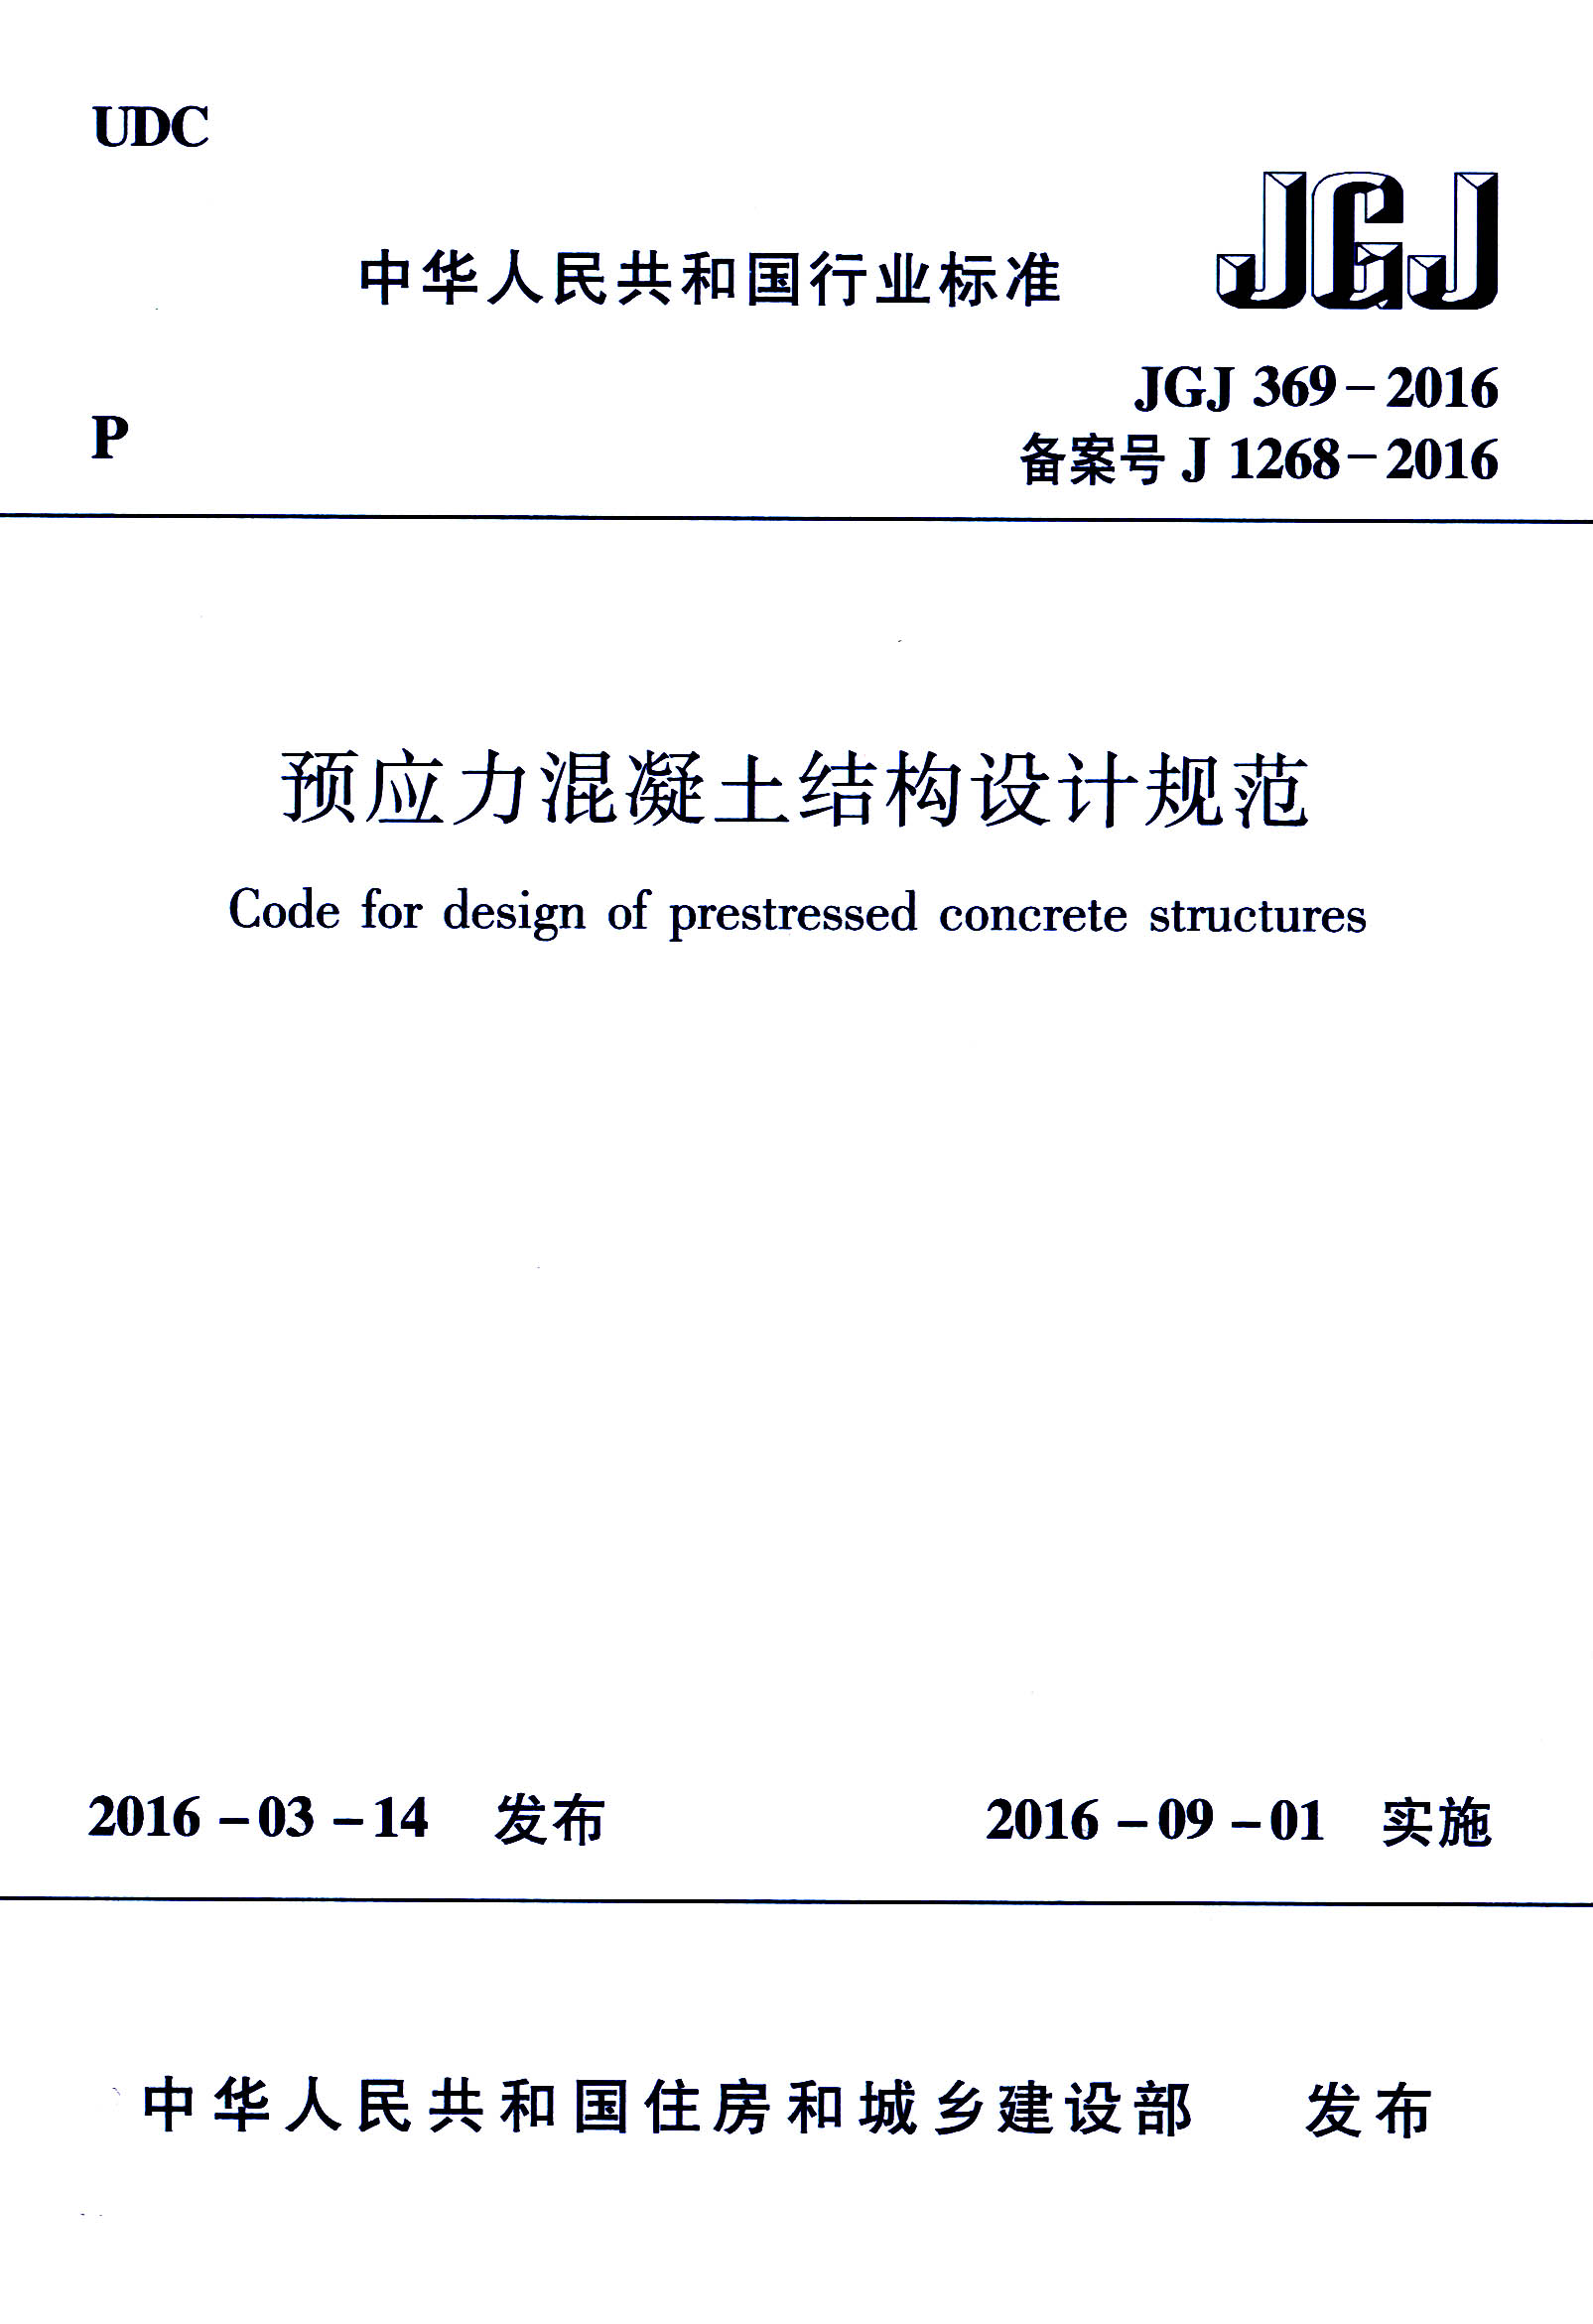 预应力混凝土结构设计规范 1.jpg